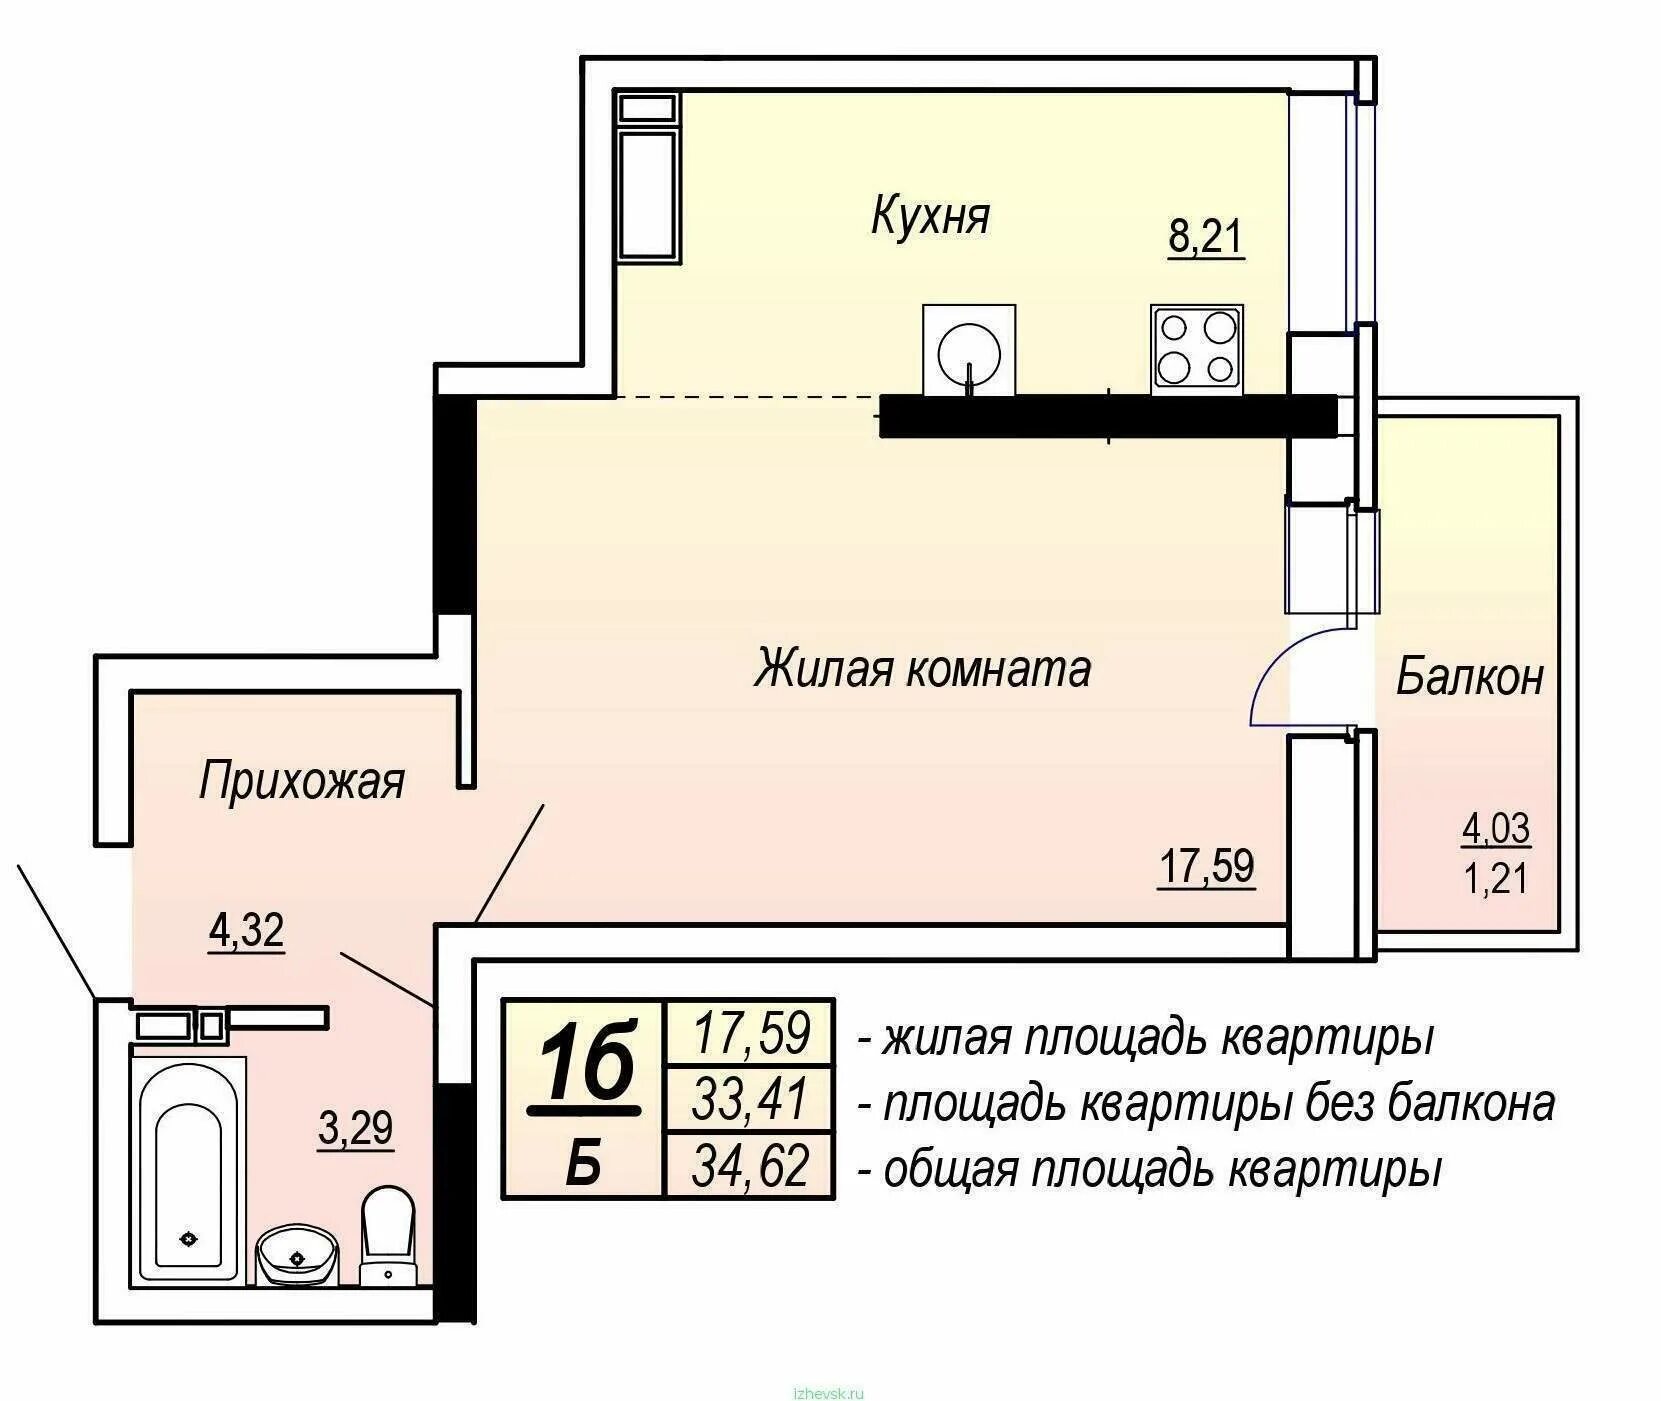 Под жилплощадь. Общая площадь квартиры. Жилая площадь квартиры и общая площадь. Жилая площадь квартиры это. Общая площадь квартиры на плане.